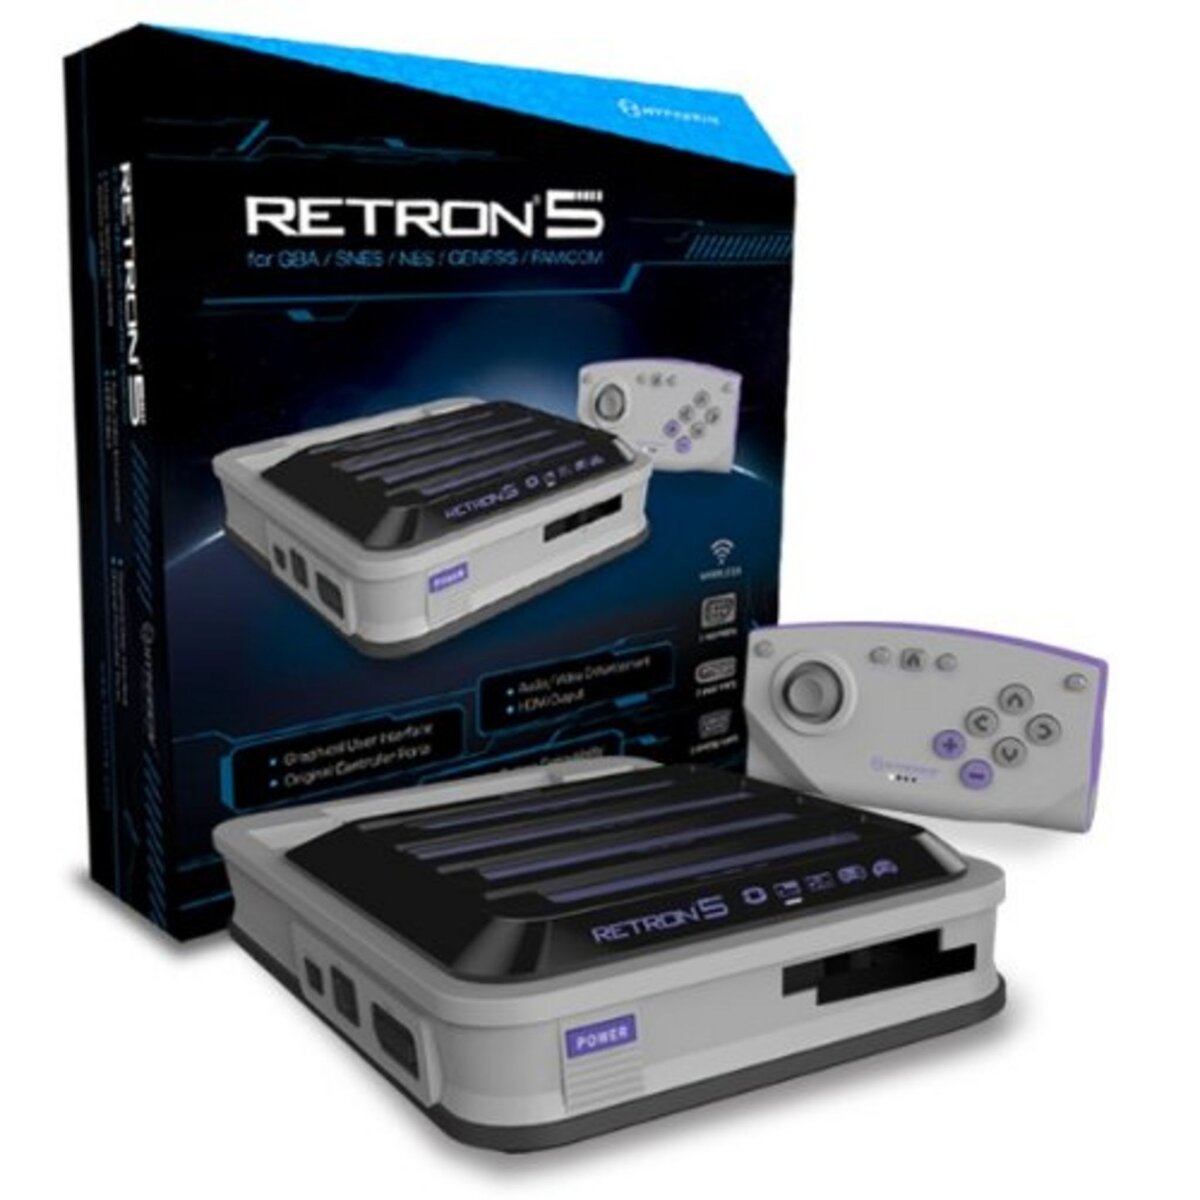 Console RetroN 5